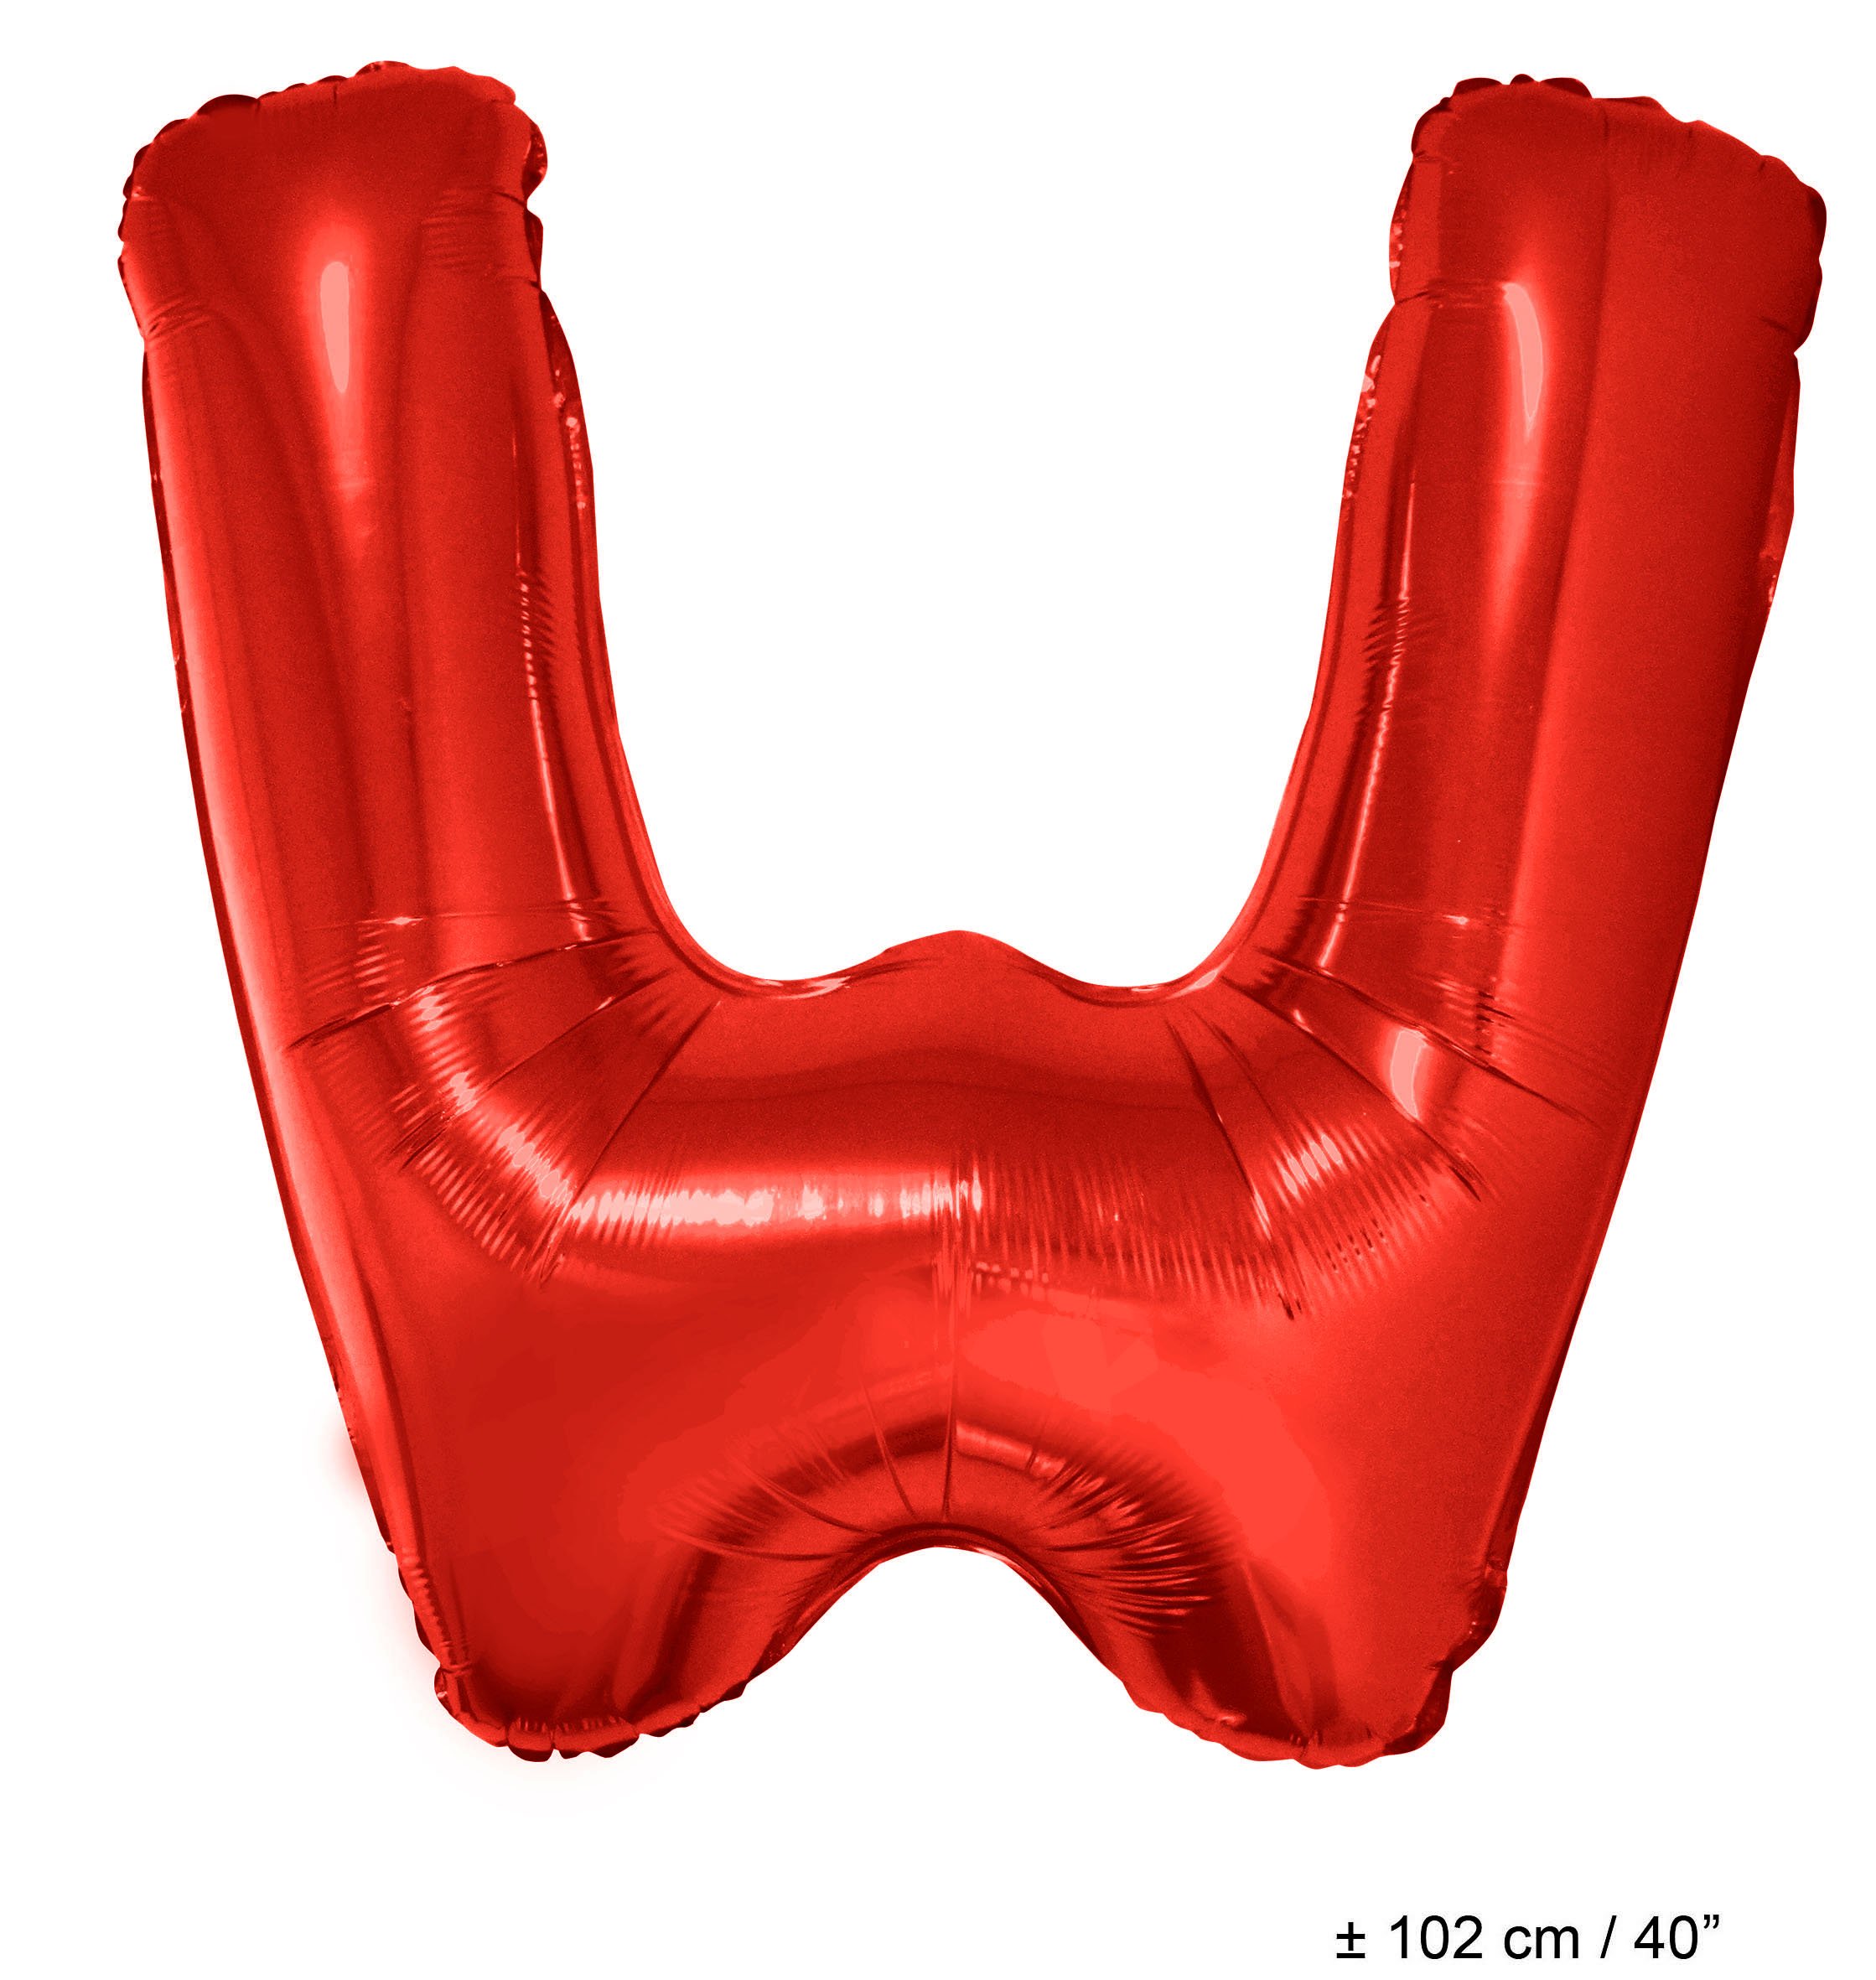 Folienballons mit Buchstaben Rot 40"(102 cm)